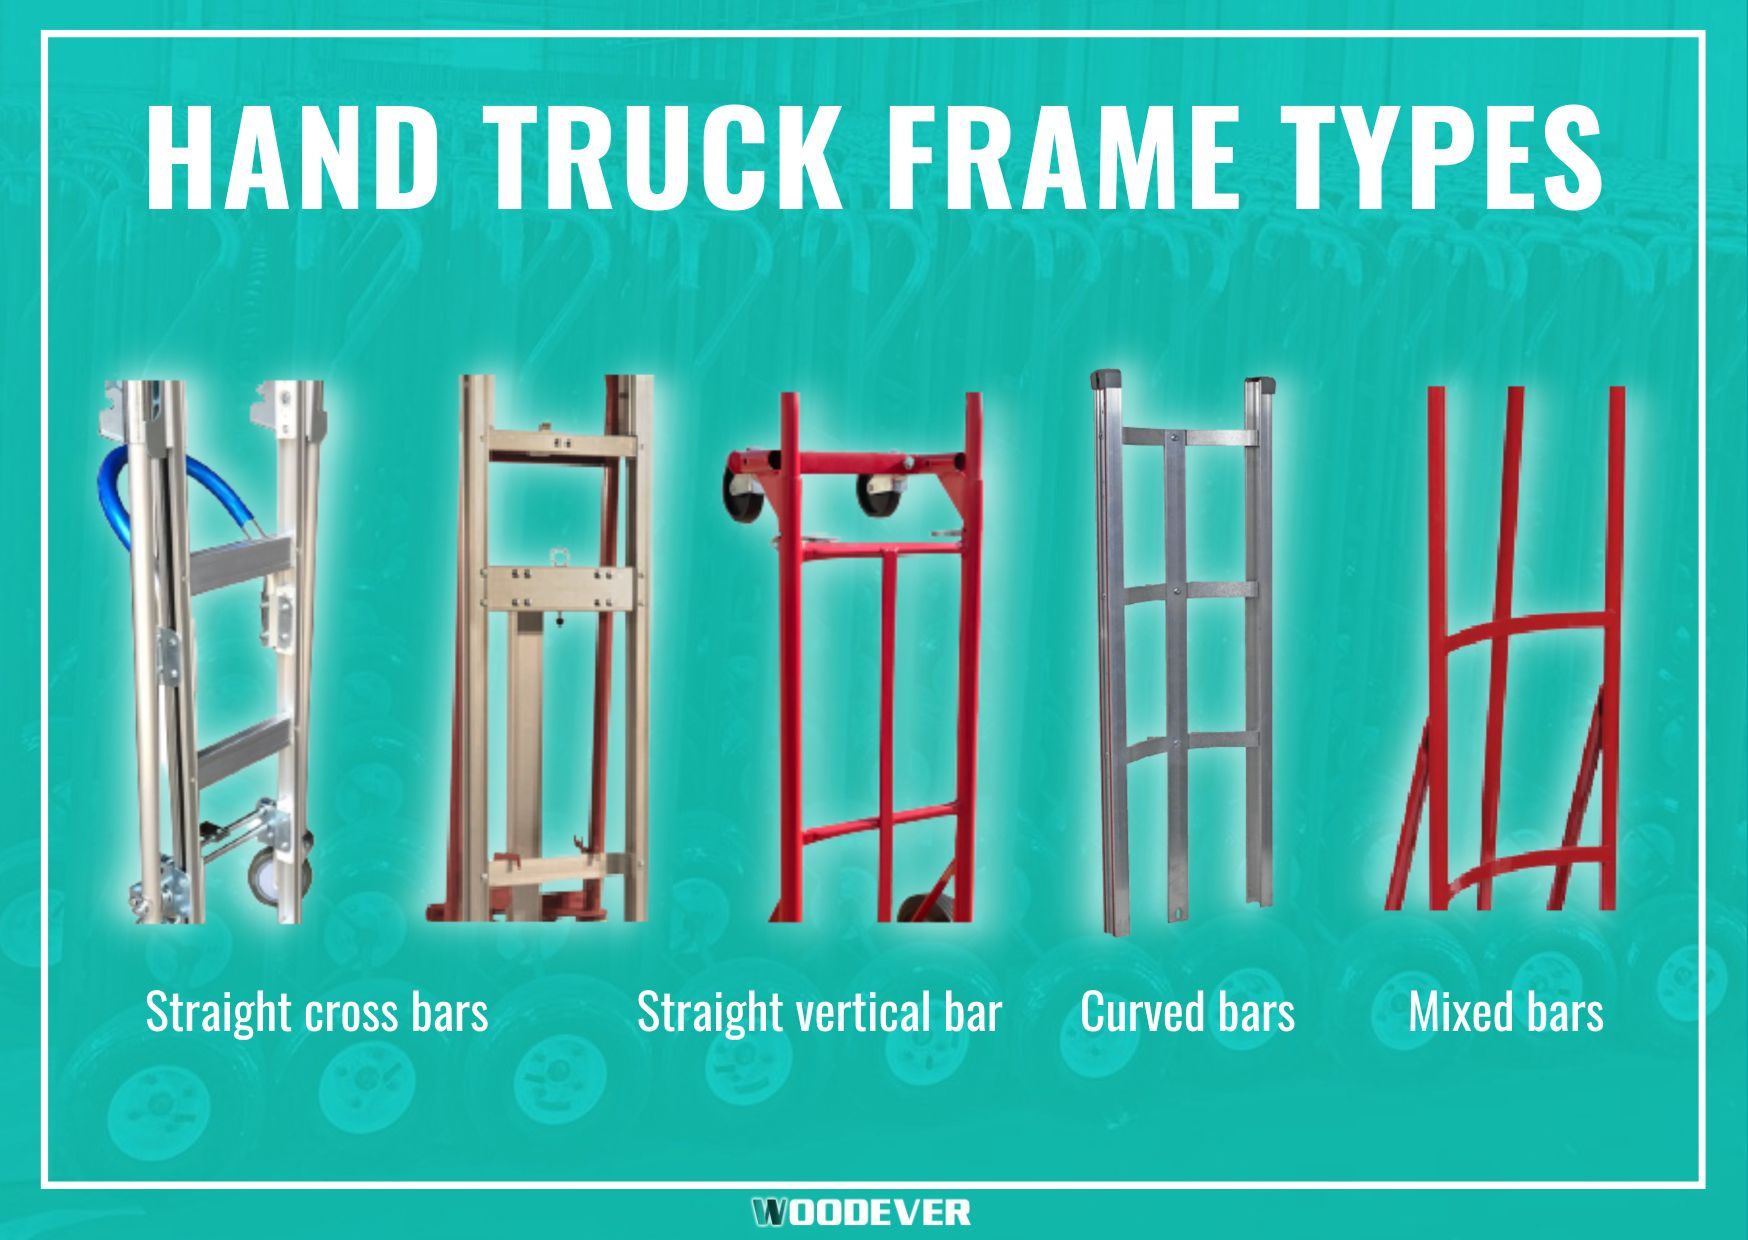 Gängige Arten von Rahmen für Handwagen und Transportwagen: Stahlrahmen, Aluminiumrahmen, gebogener Rahmen.